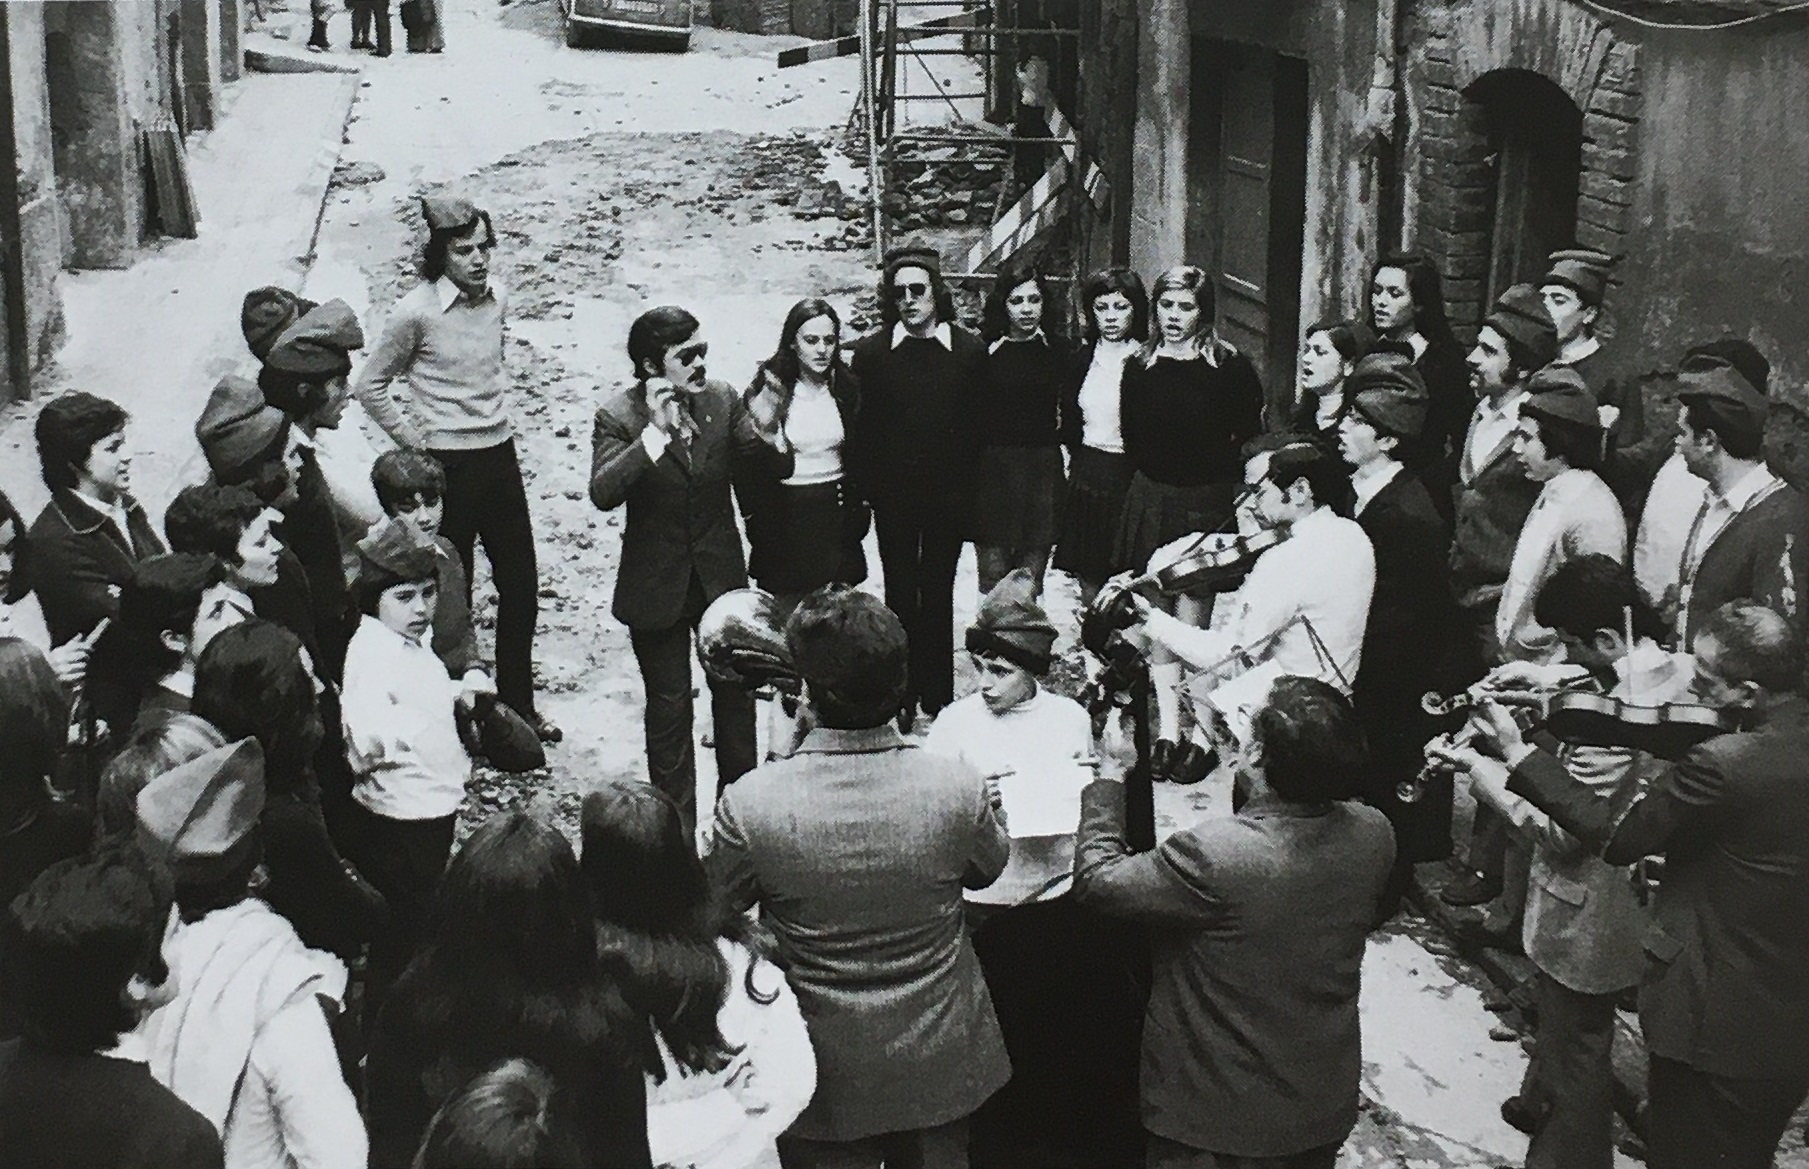 DÃ¨cada de 1970 - Colla caramellaire de Joventuts Musicals i el Centre Excursionista (font: llibre 'Les Caramelles de SÃºria' de NÃºria Balaguer i Riera).